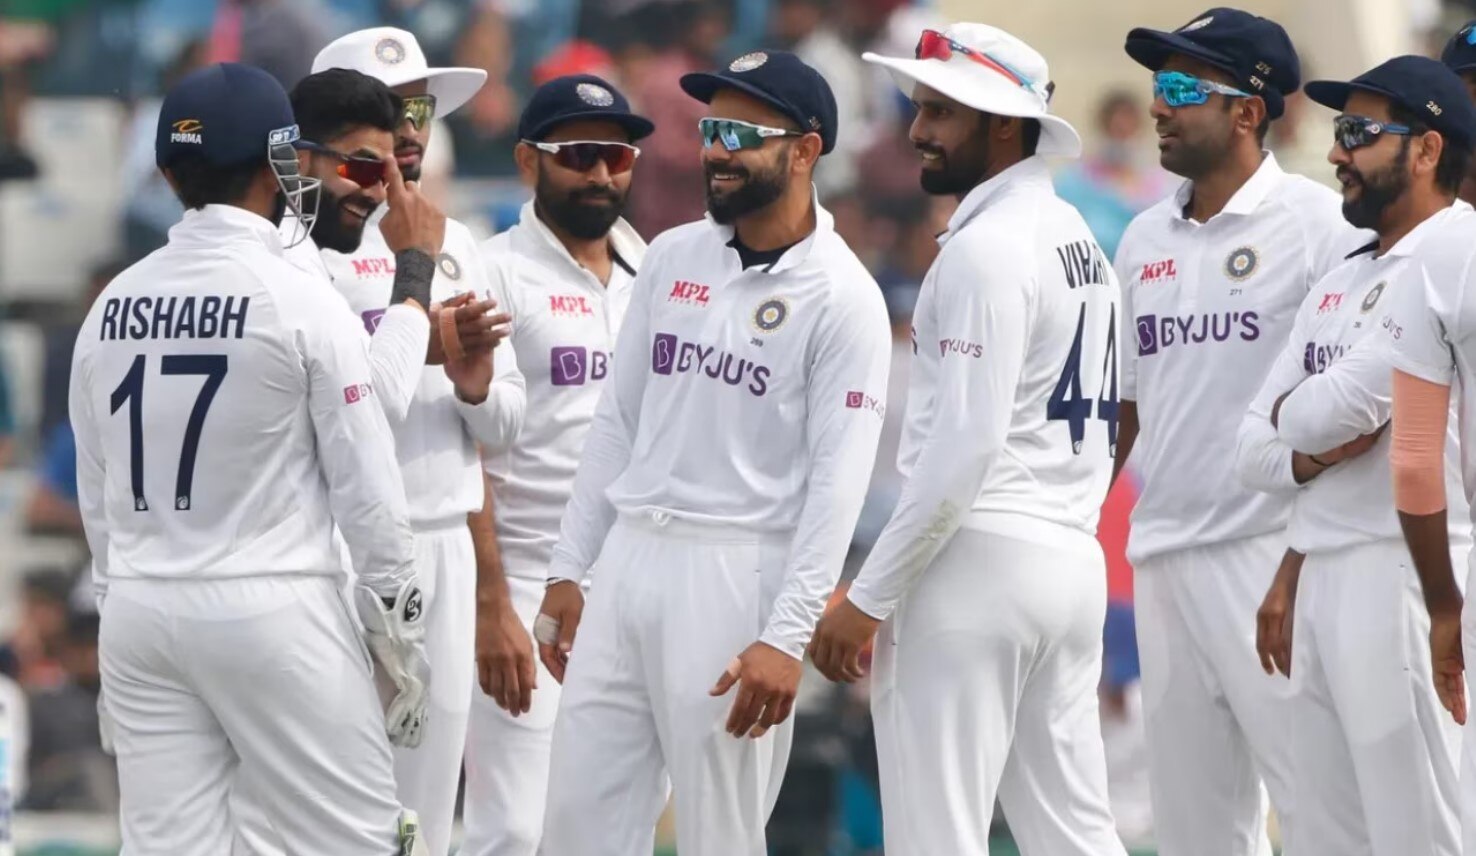 आज पहले टेस्ट में ऑस्ट्रेलिया को तबाह कर देगा ये घातक खिलाड़ी, कंगारुओं में फैला खौफ!| Hindi News